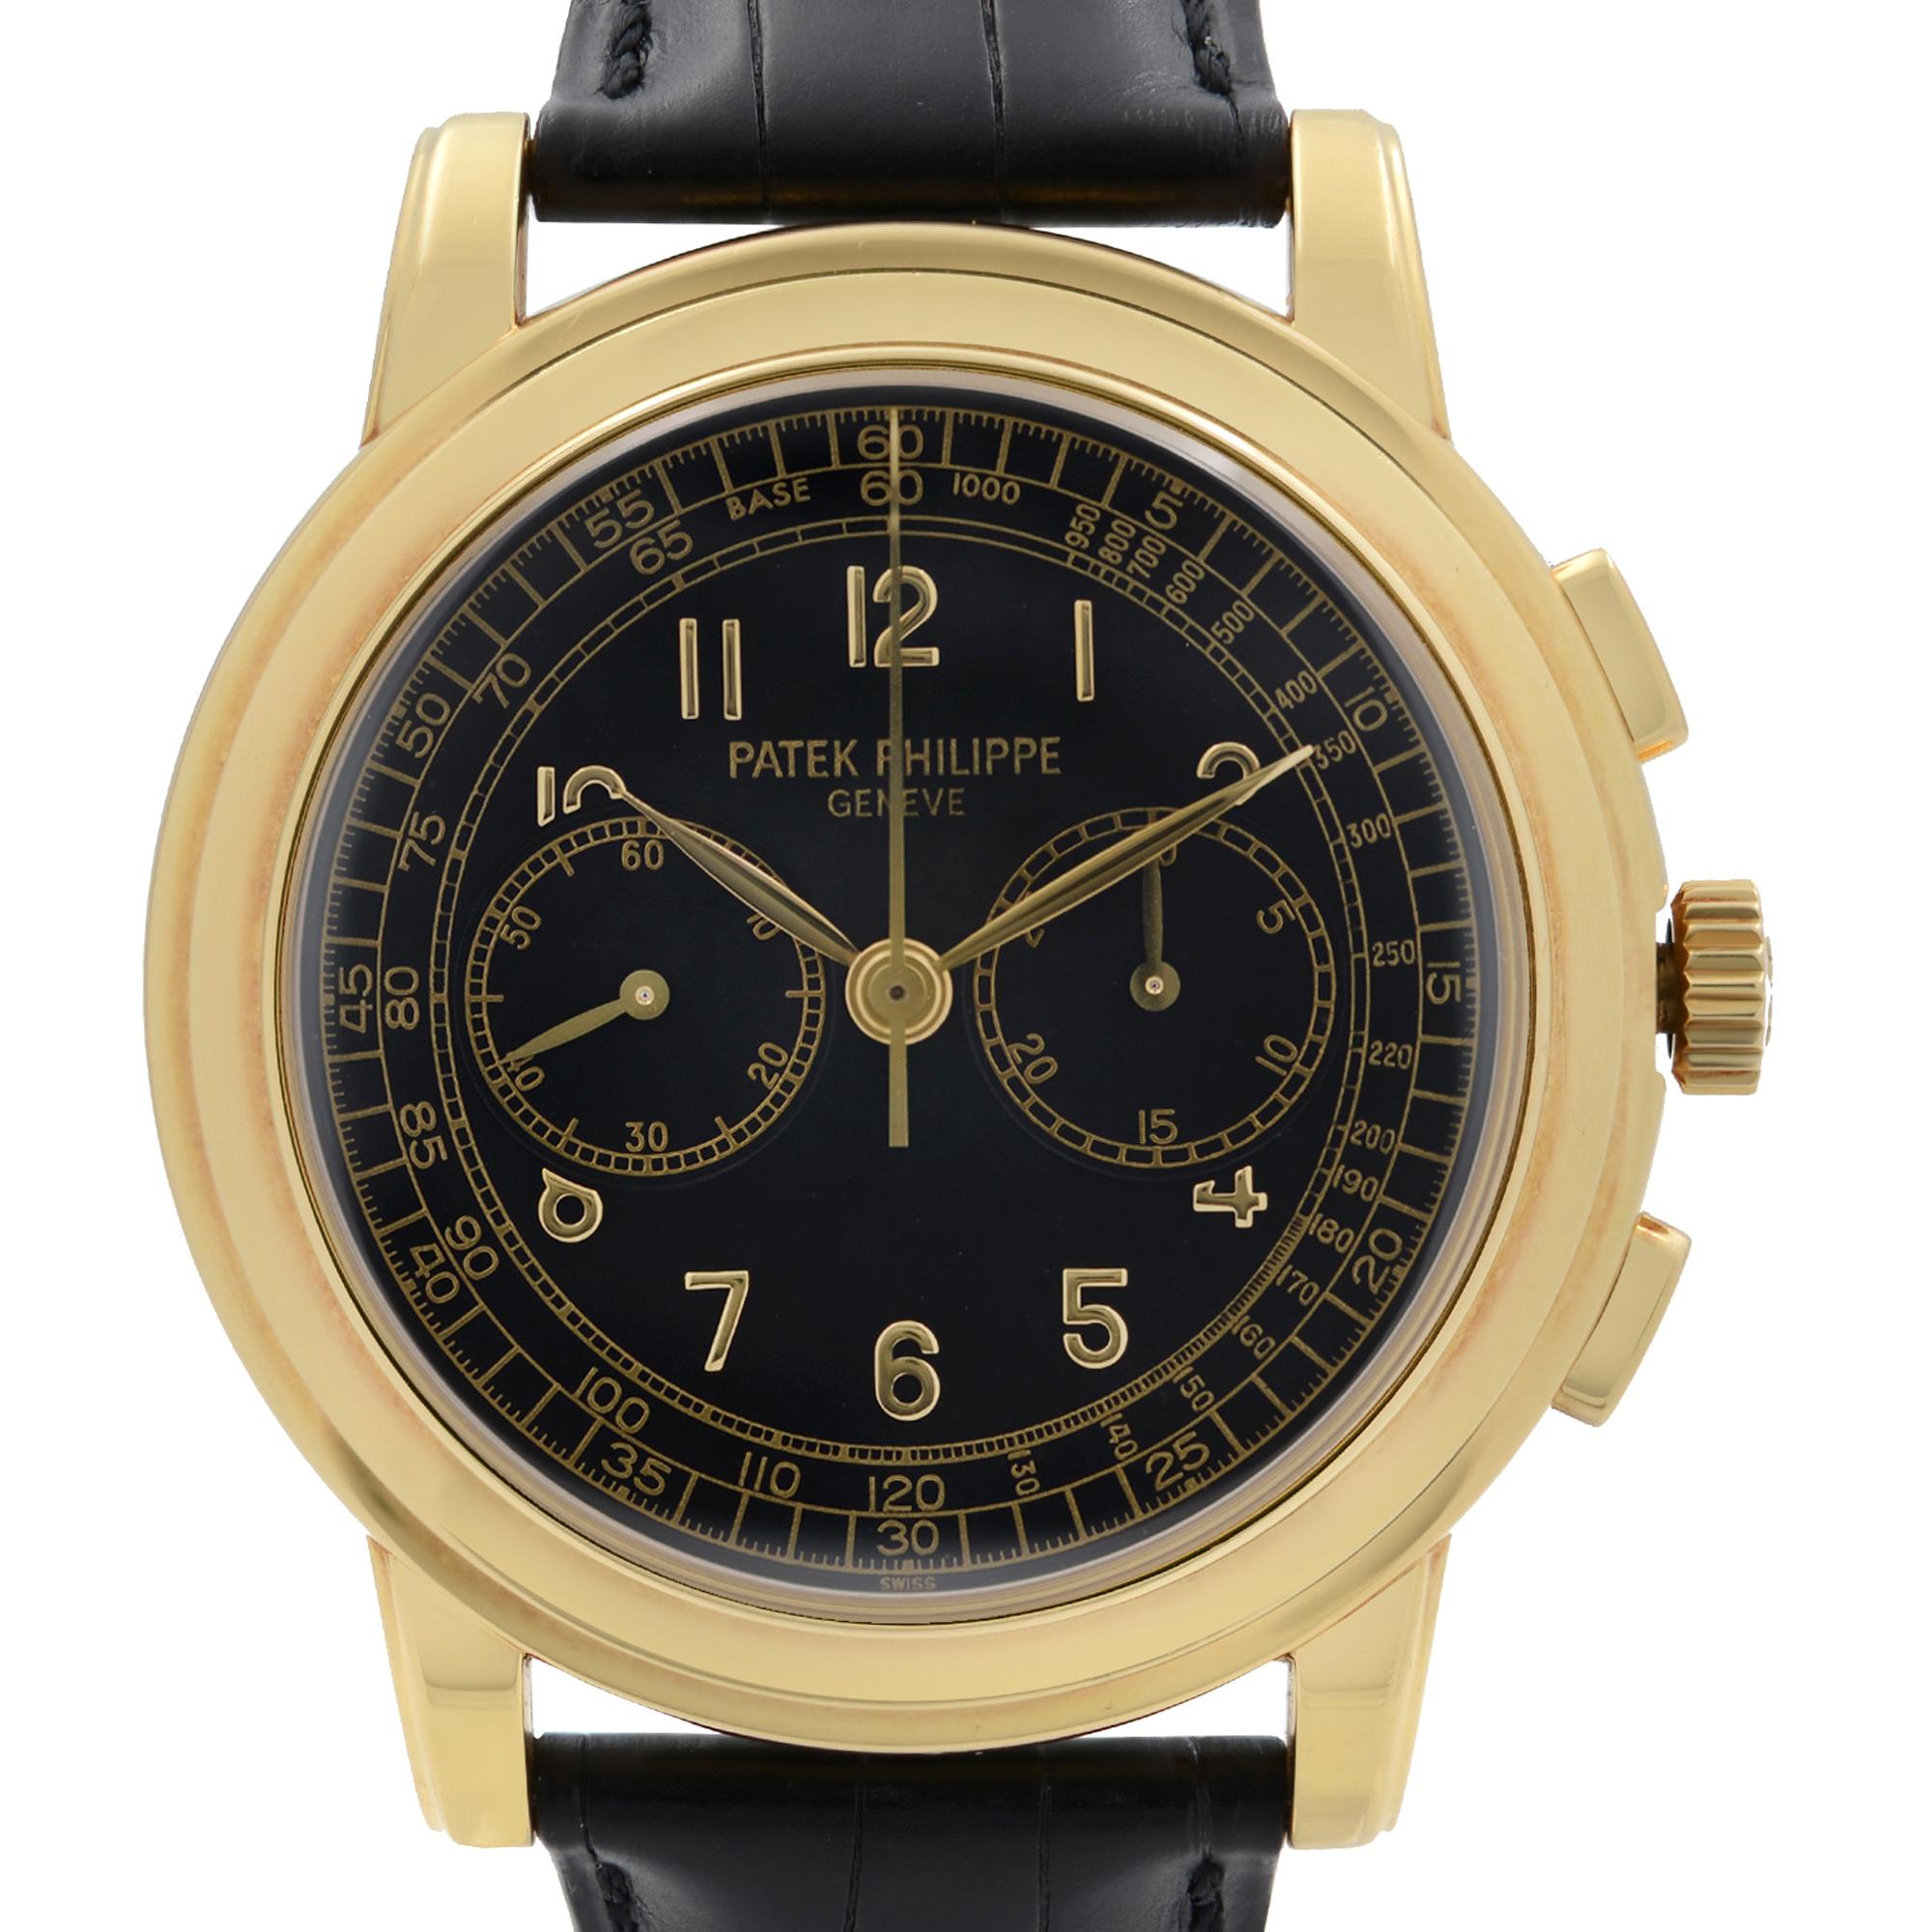 Pre Owned Patek Philippe Komplikationen Chronograph Gelbgold Hand Wind Watch 5070J-001. Dieser schöne Zeitmesser wird durch mechanische (manuelle) Bewegung angetrieben und Features: Runde 18k Gelbgold Gehäuse mit einem schwarzen Lederband, feste 18k